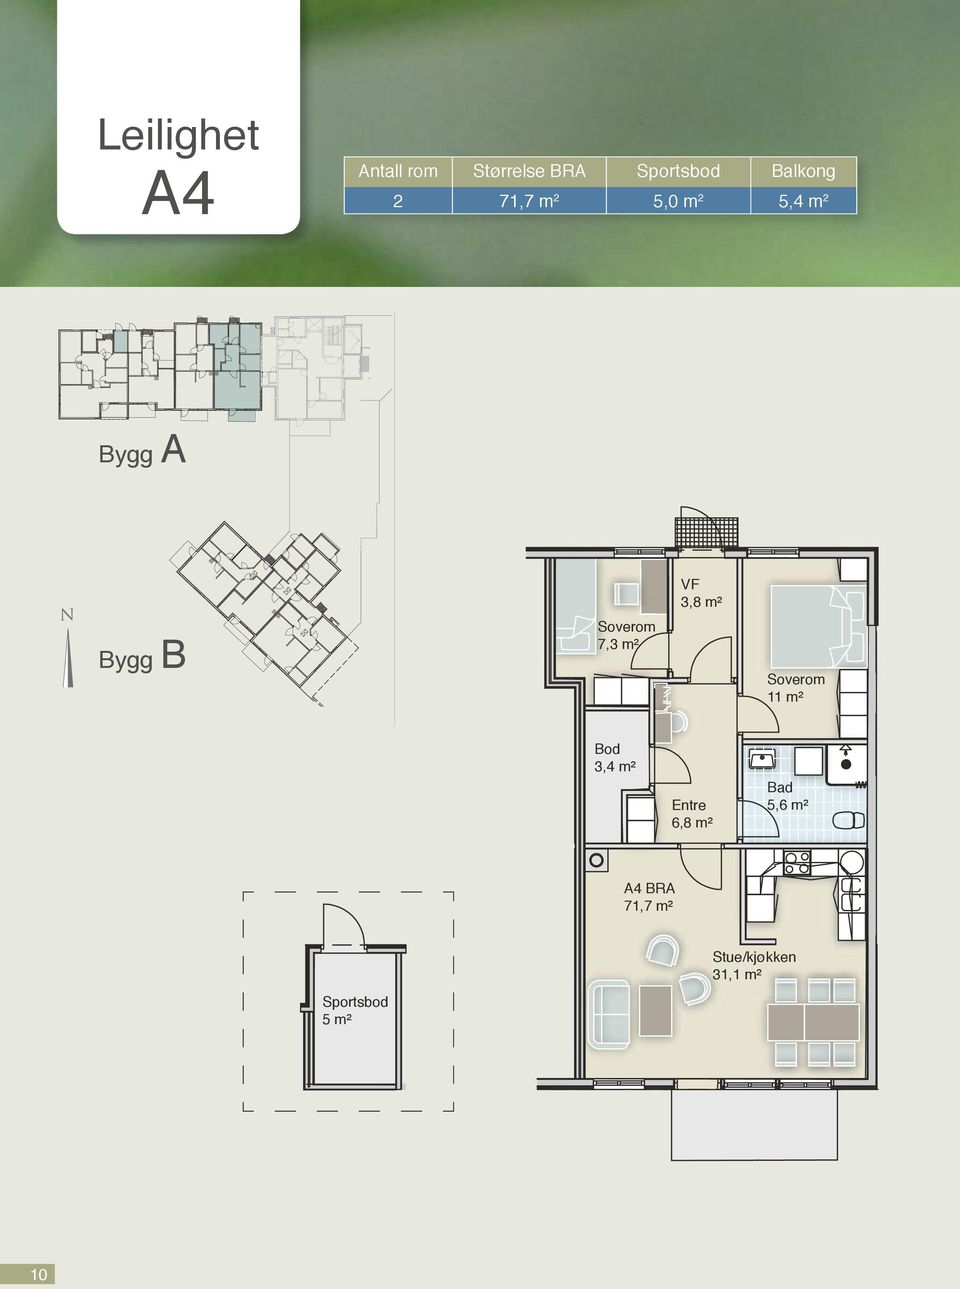 m² rtsbod Bygg B 7,3 m² 11 m² Bod 3,4 m² Entre